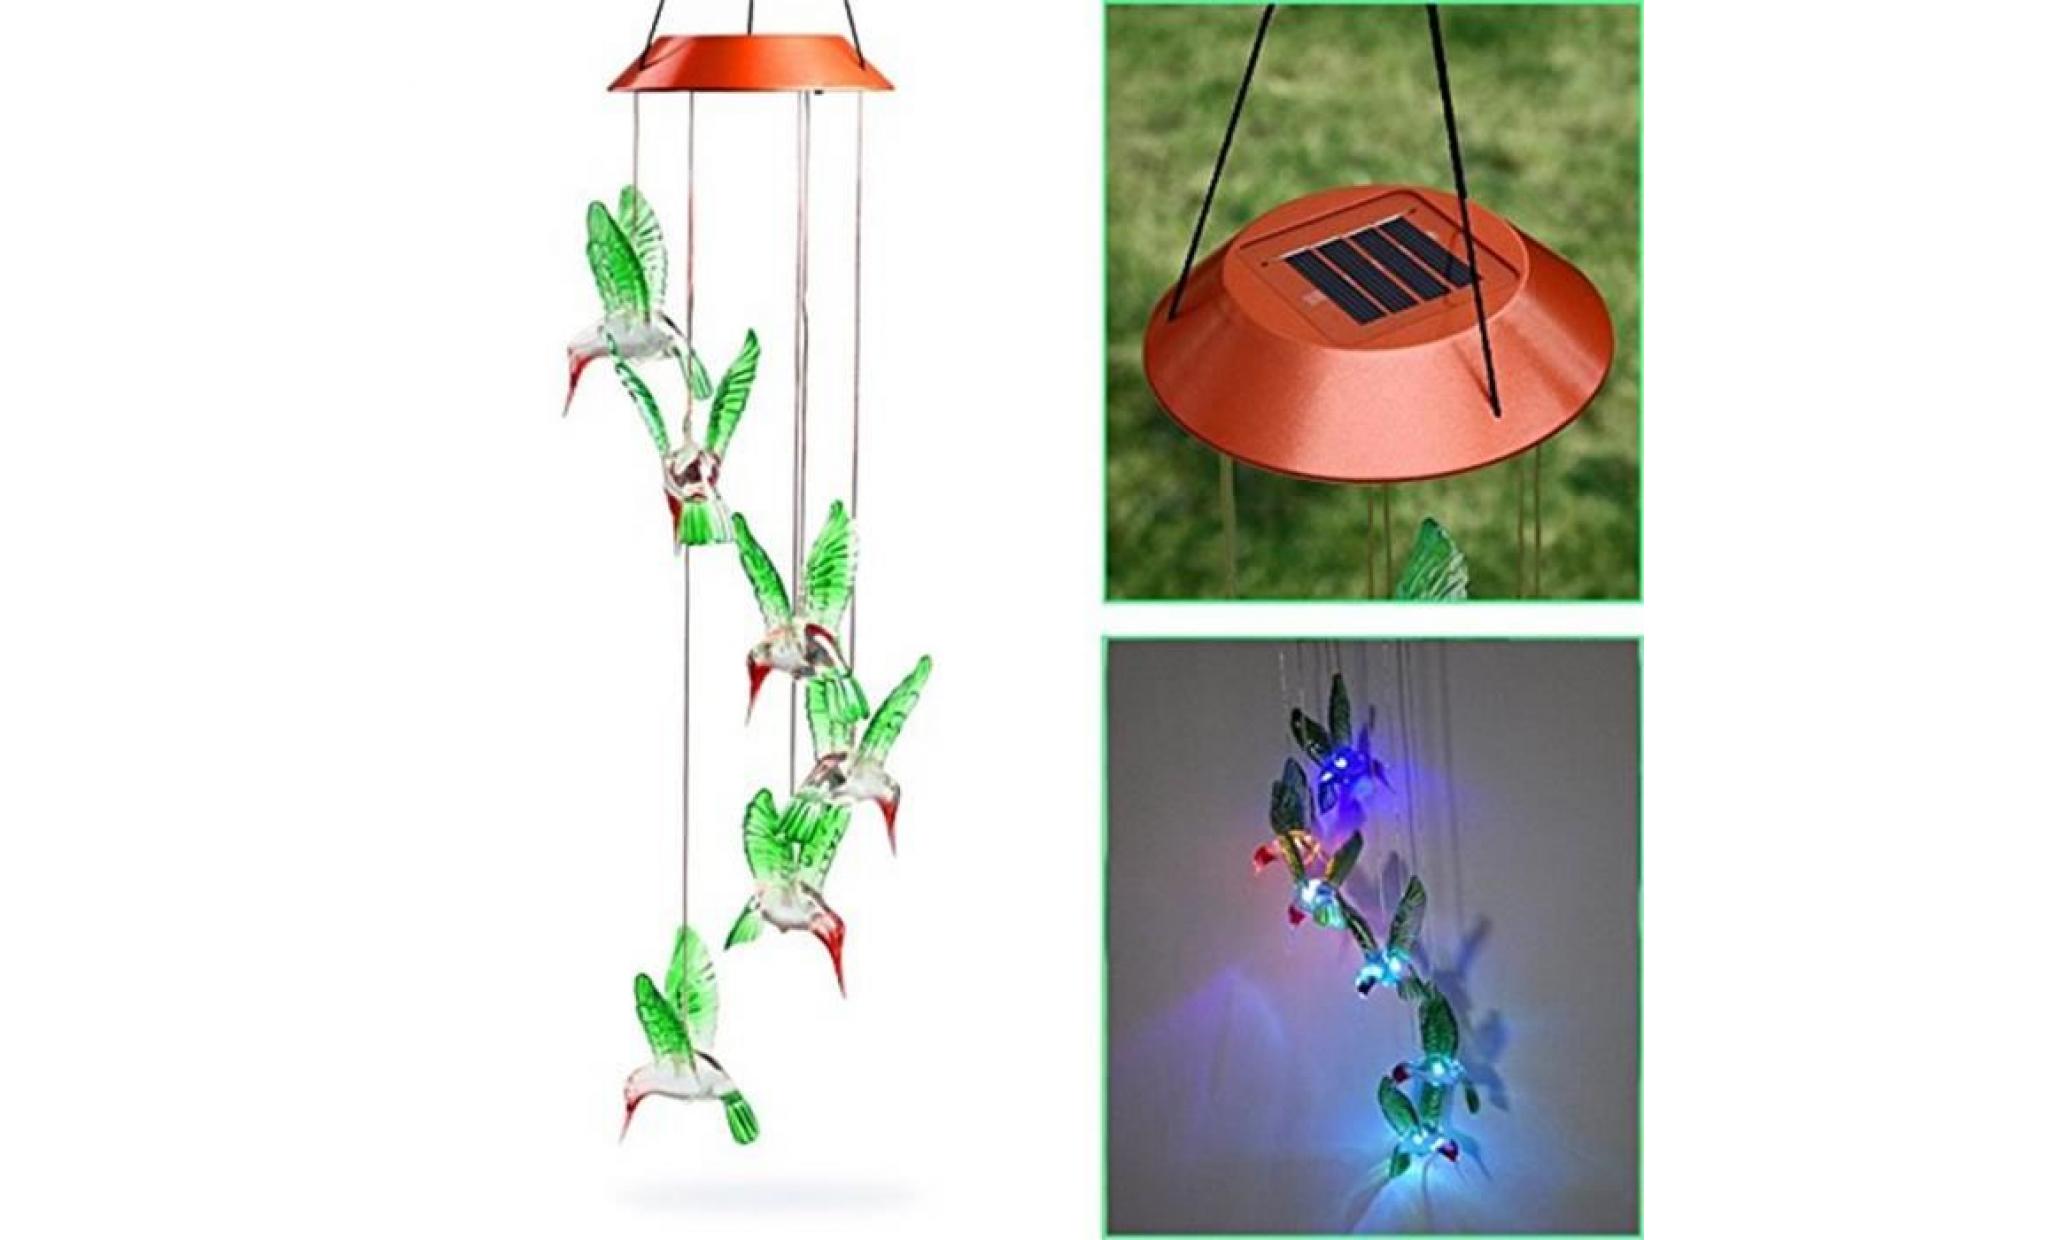 couleur changeant le vent solaire de colibri de carillon de vent de led pour l'éclairage de jardinage   lzx70901733